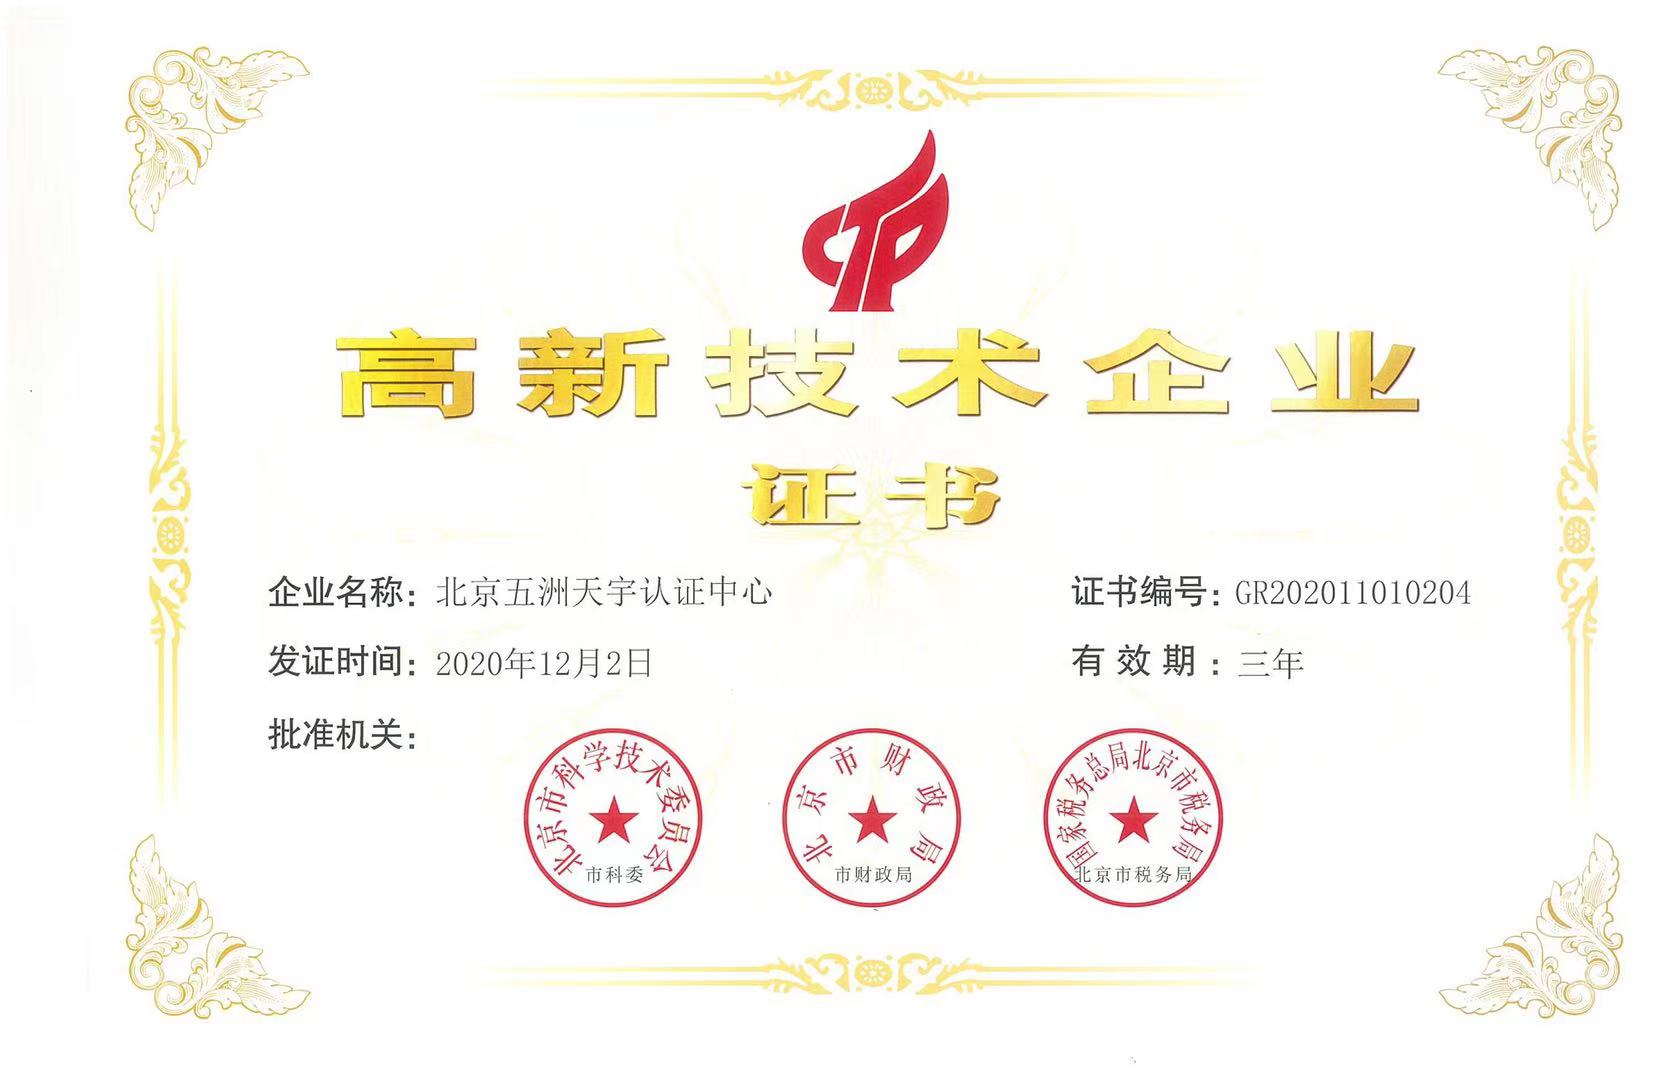 北京五洲天宇认证中心连续六年获北京市高新技术企业认定